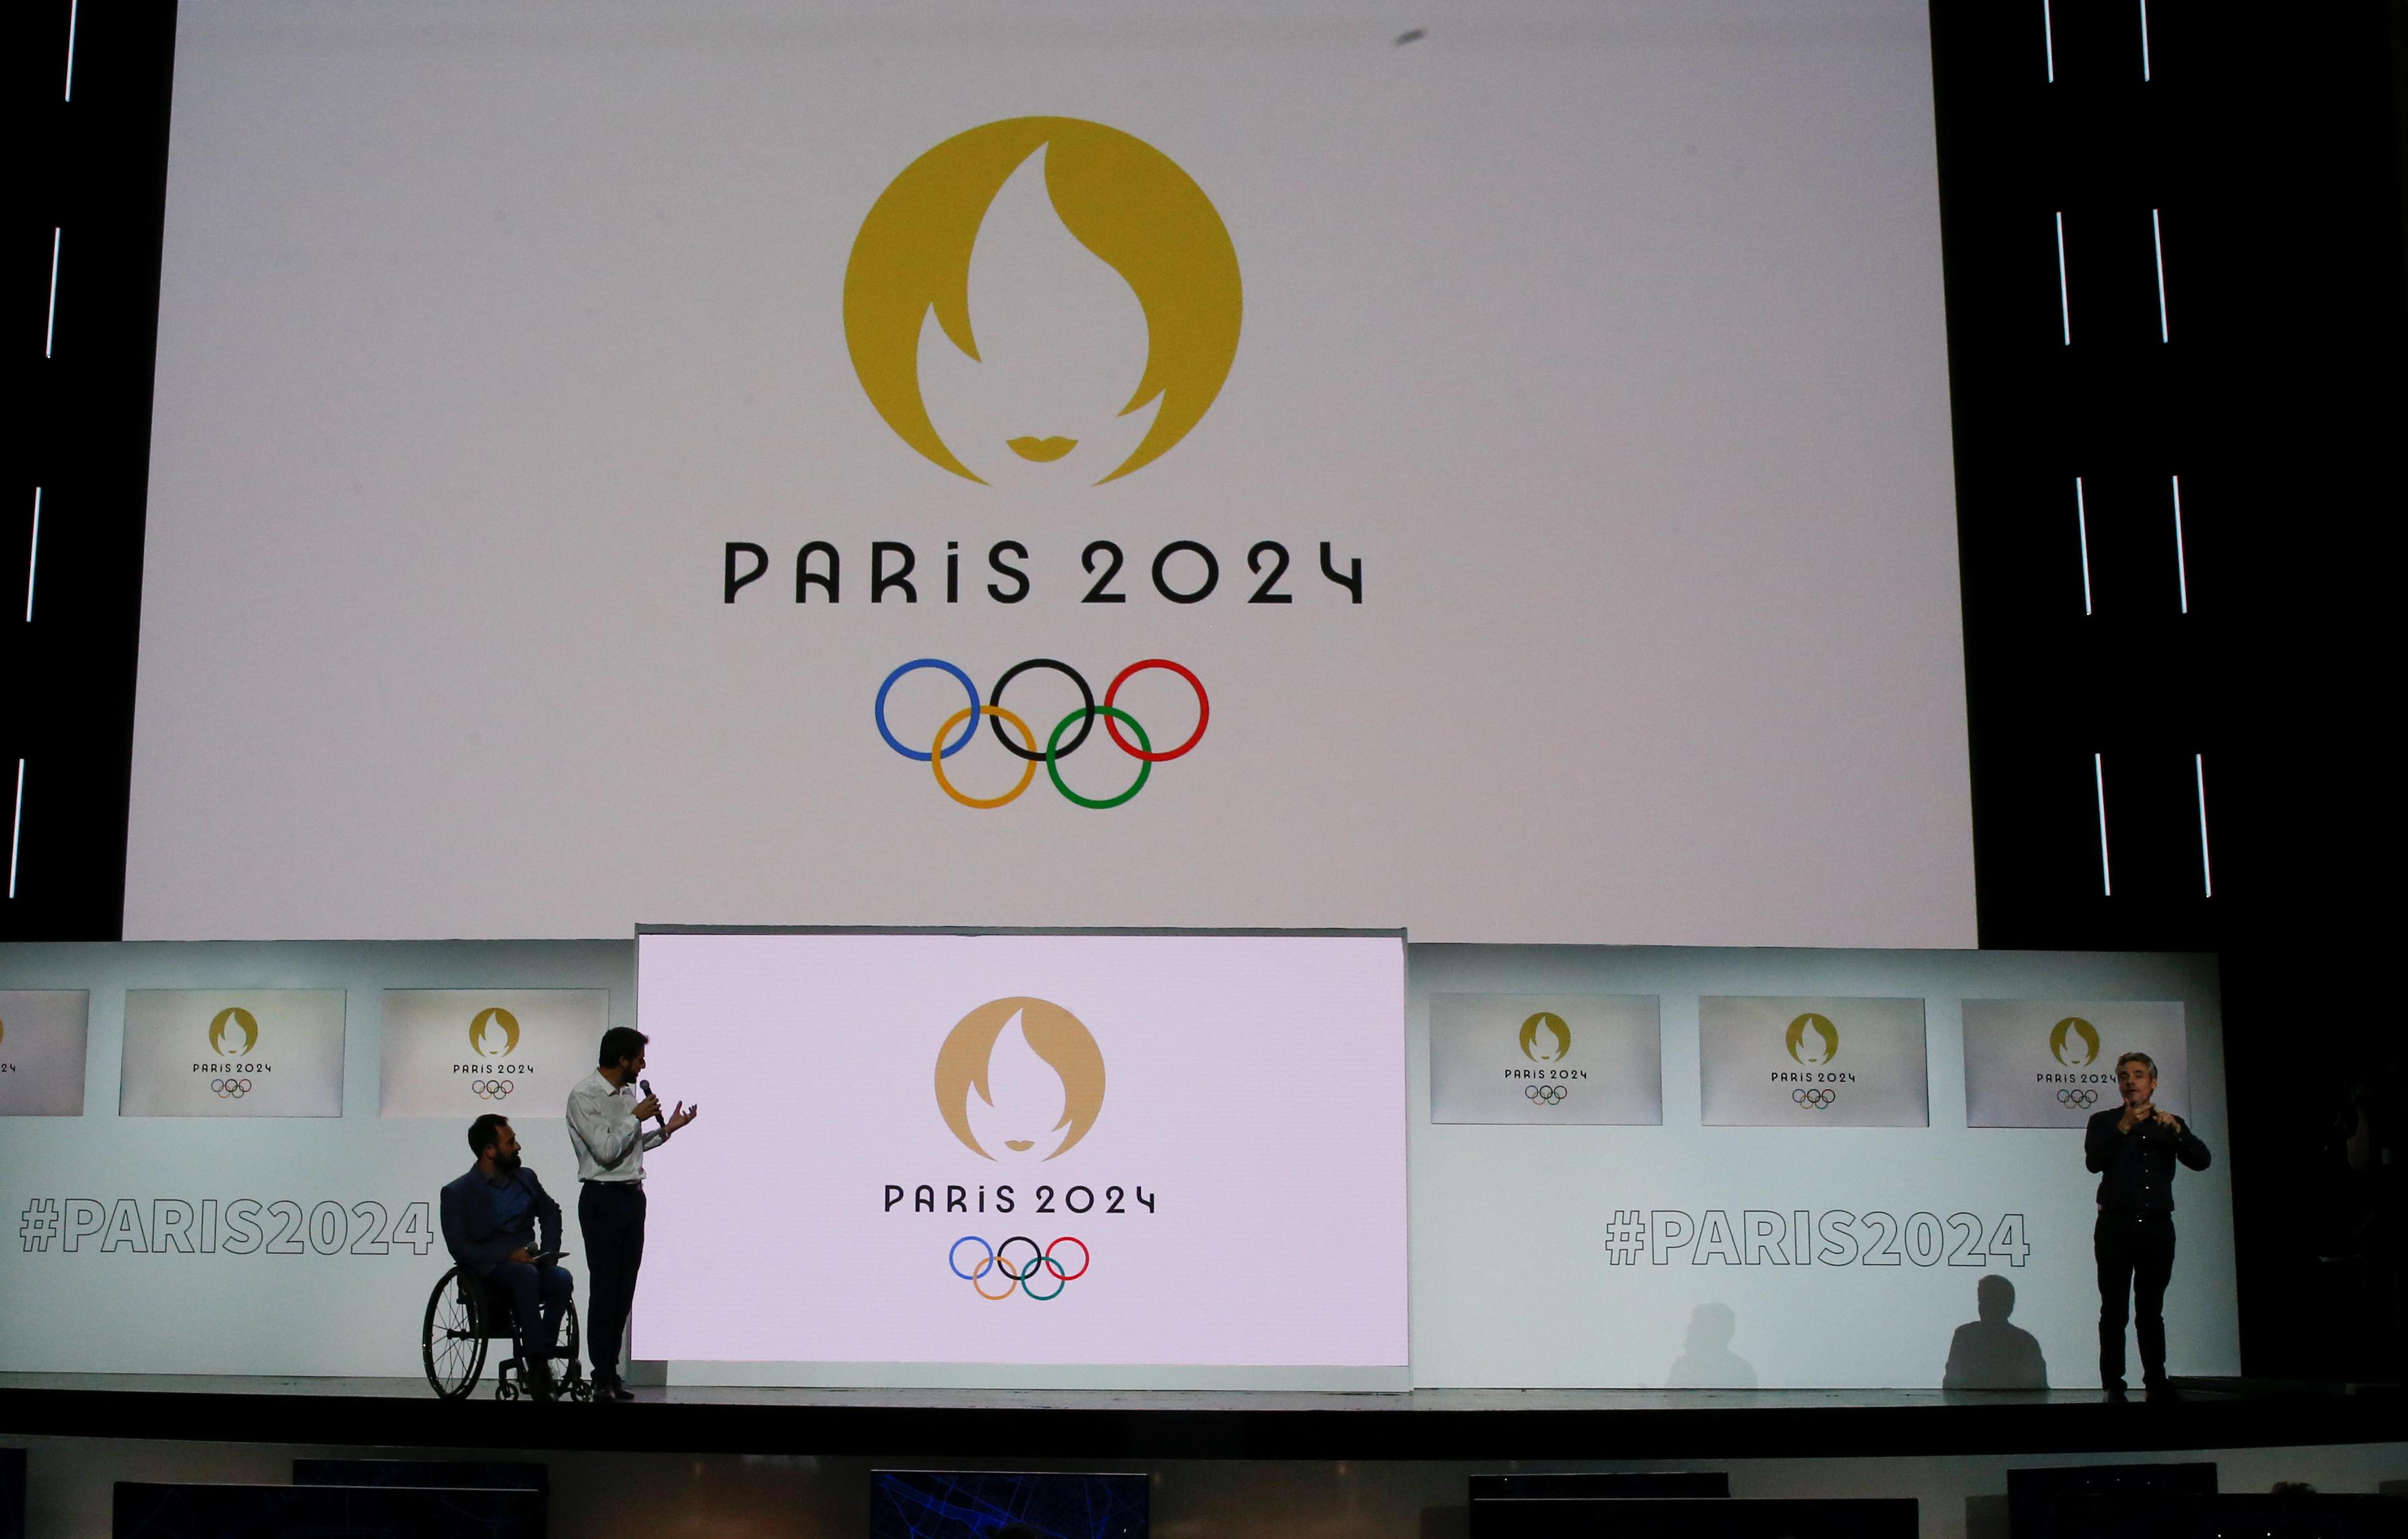 Прэфжс 2024. Олимпийские игры 2024 года в Париже. Символ олимпиады 2024 в Париже. Эмблема Олимпийских игр в Париже 2024.